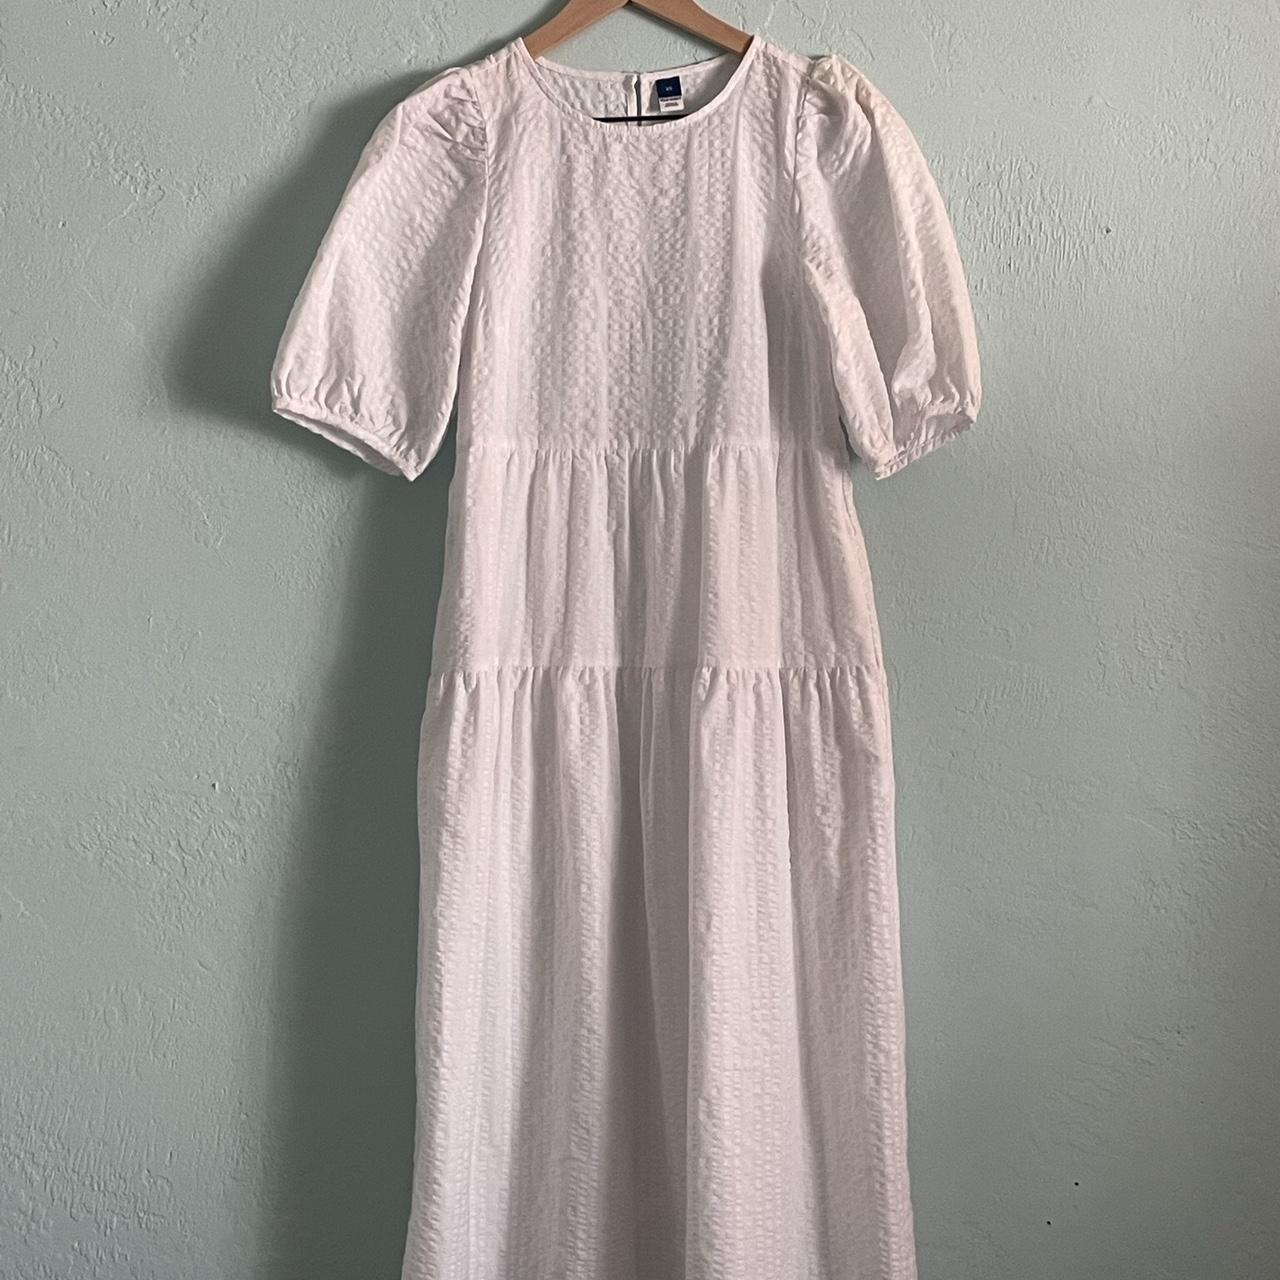 Old Navy Women's White Dress